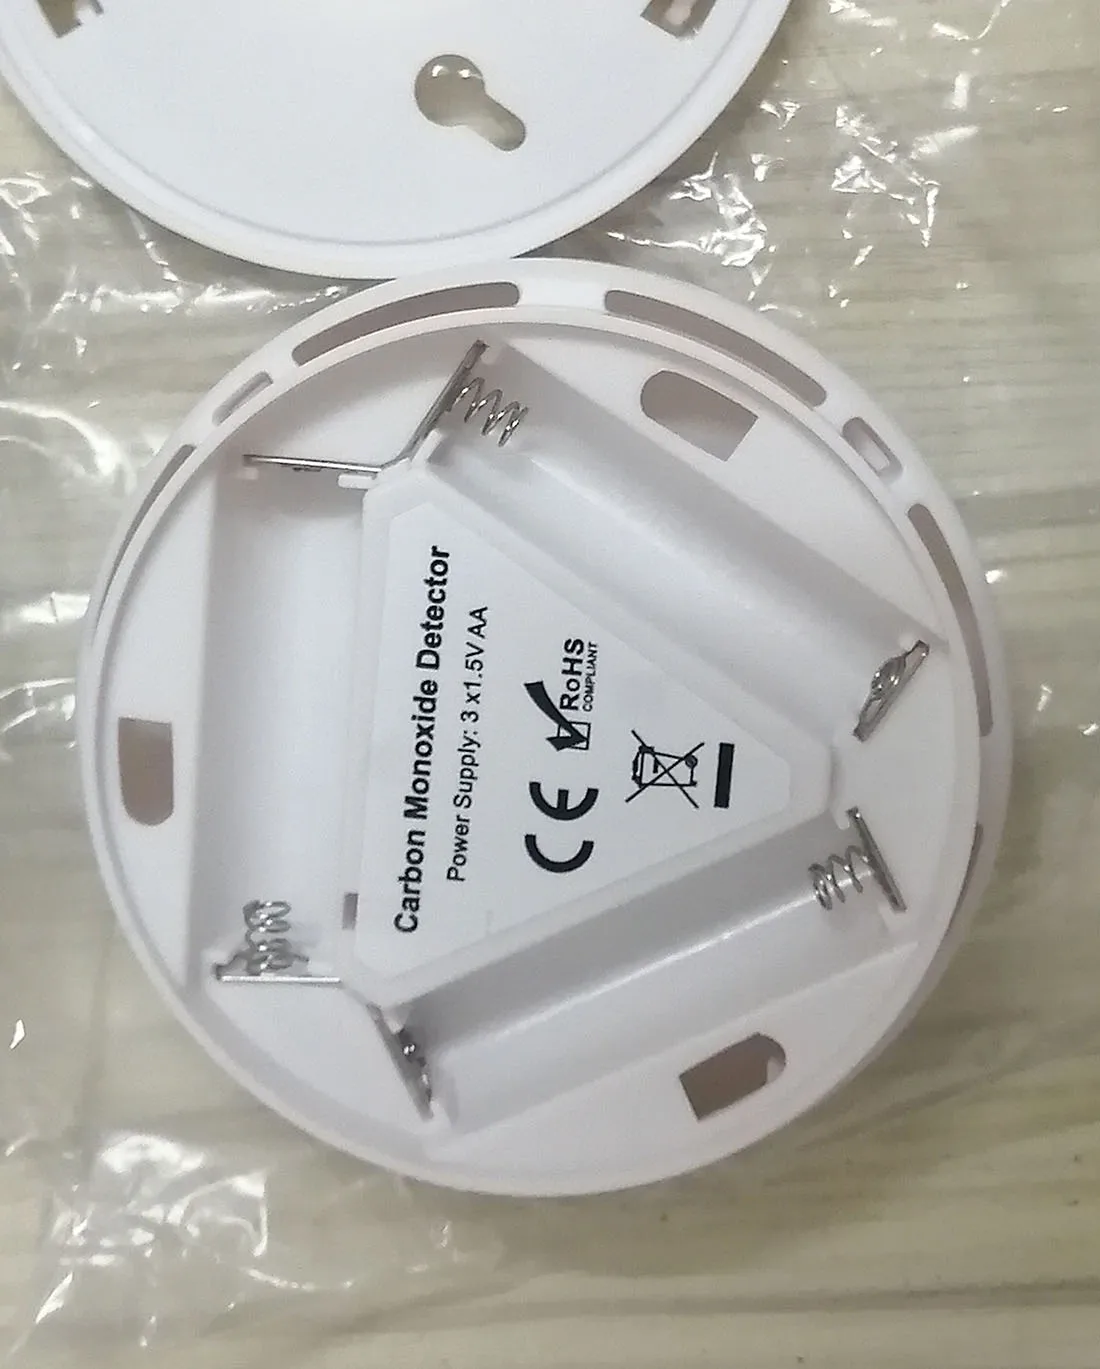 2 Pak CO Detektor Karbon Monoksida Detektor Alarm Bertenaga Baterai (Tidak Termasuk) Alarm Deteksi Gas LCD Tampilan Digital